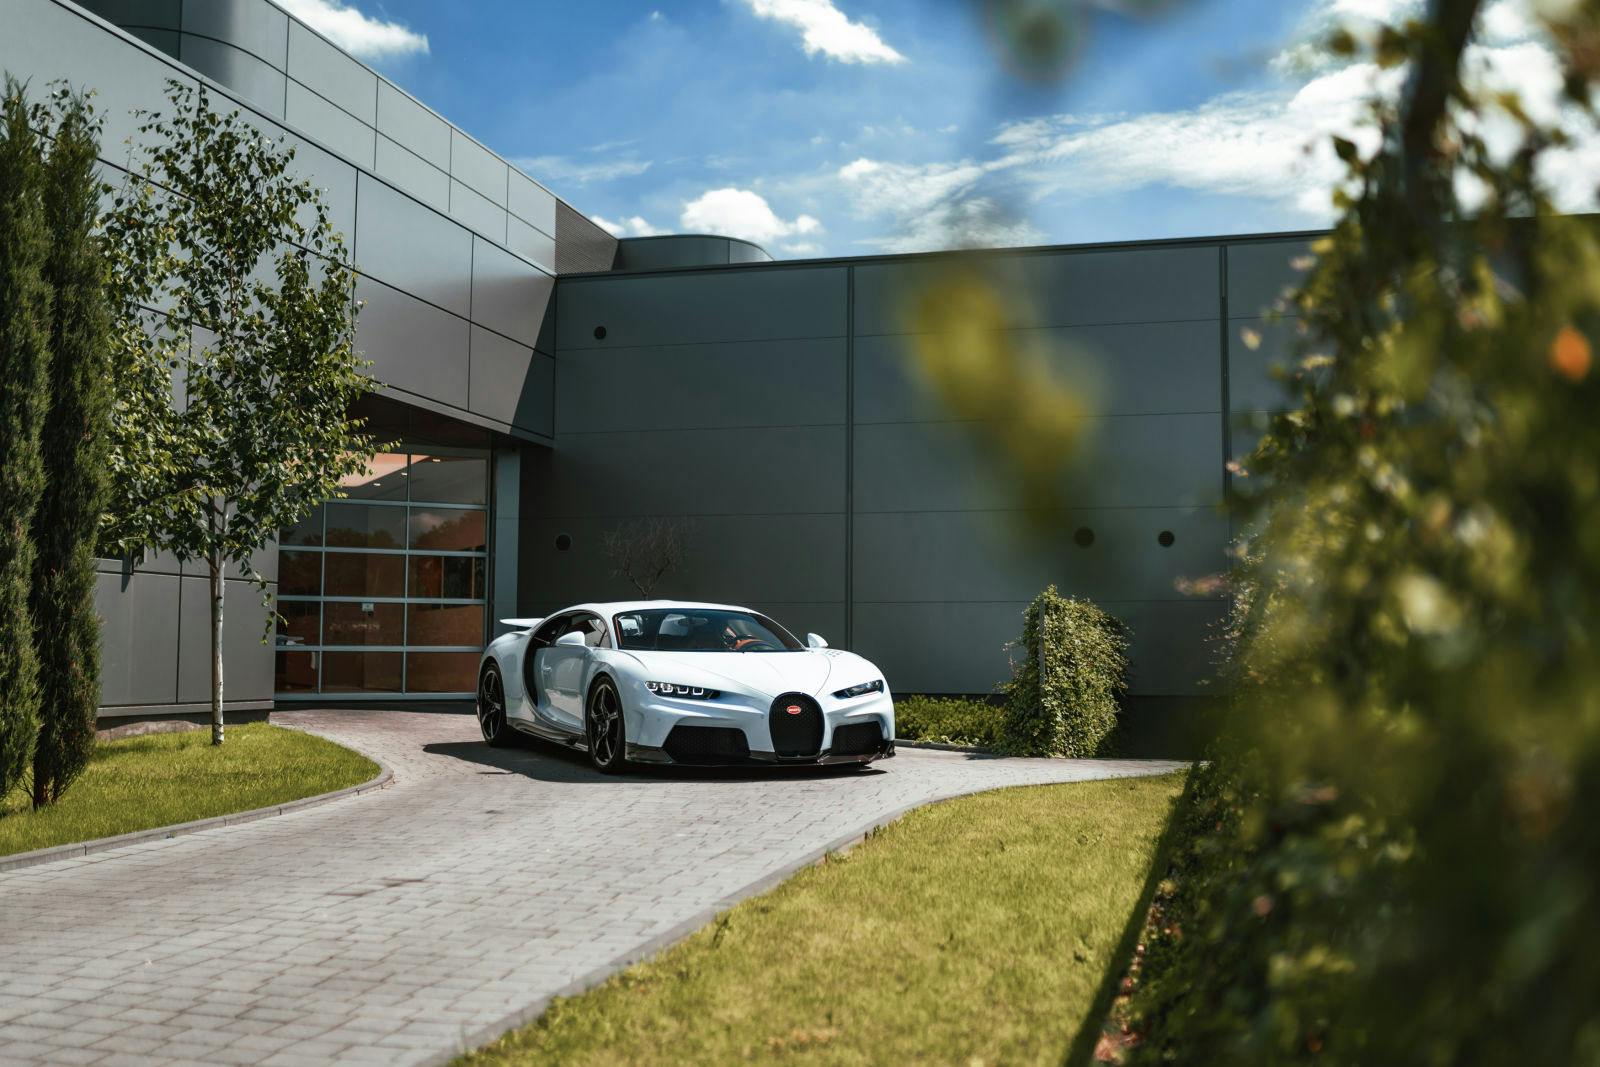 En collaboration avec le groupe Pietrzak, Bugatti étend son réseau de concessionnaires européens dans la ville polonaise de Katowice.